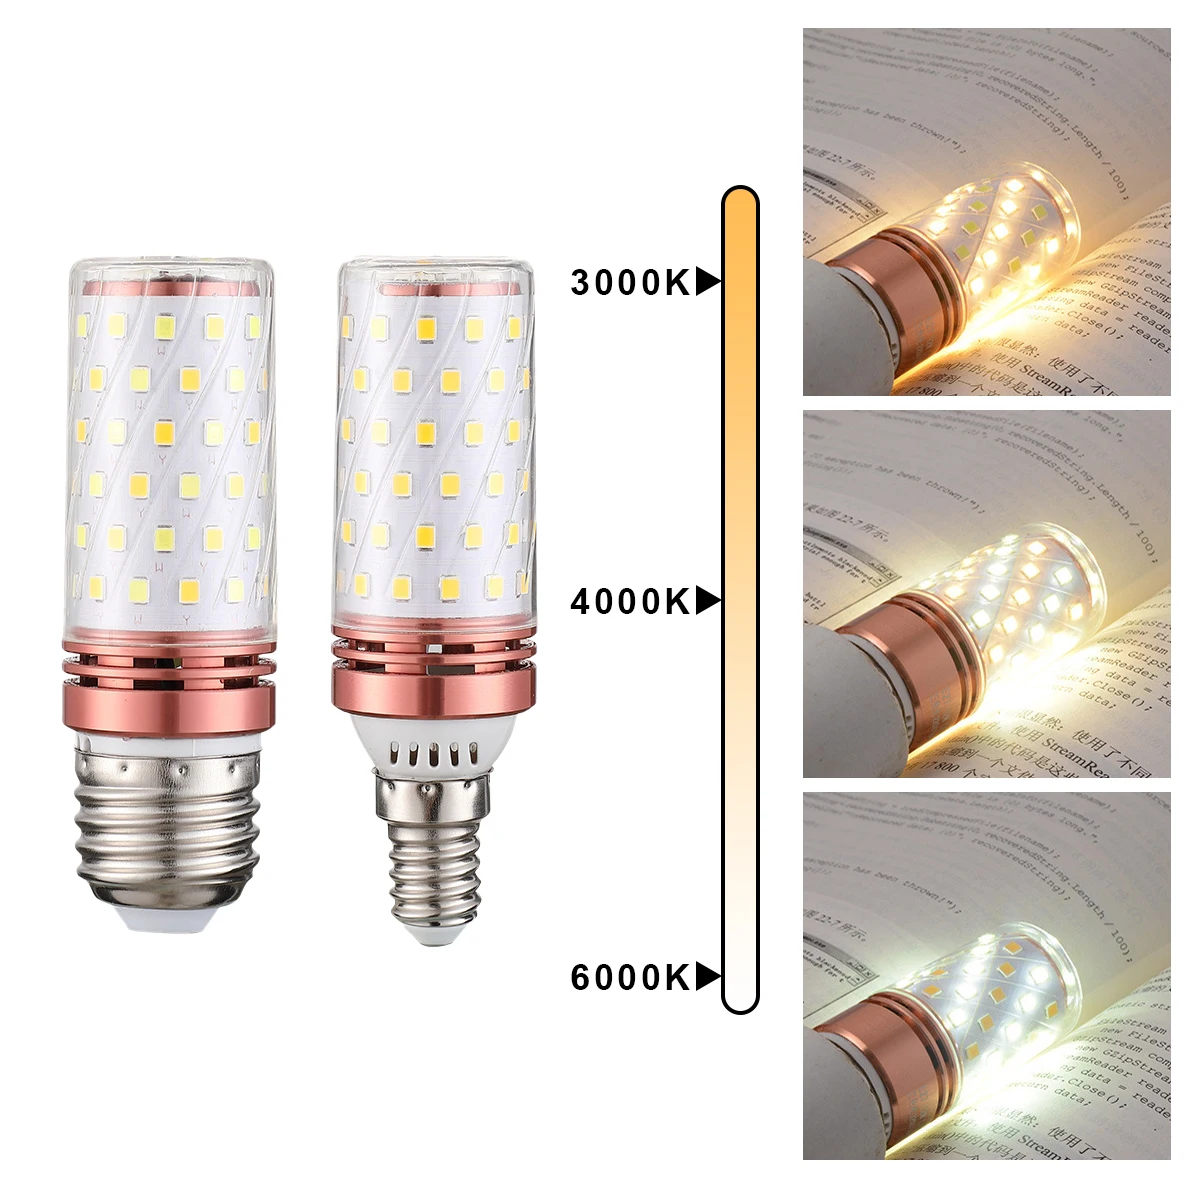 8PCS E14 Corn Bulb 110V 220V lampara Led 16W Color Changeable Chandelier Lamp Lighting for Living Room